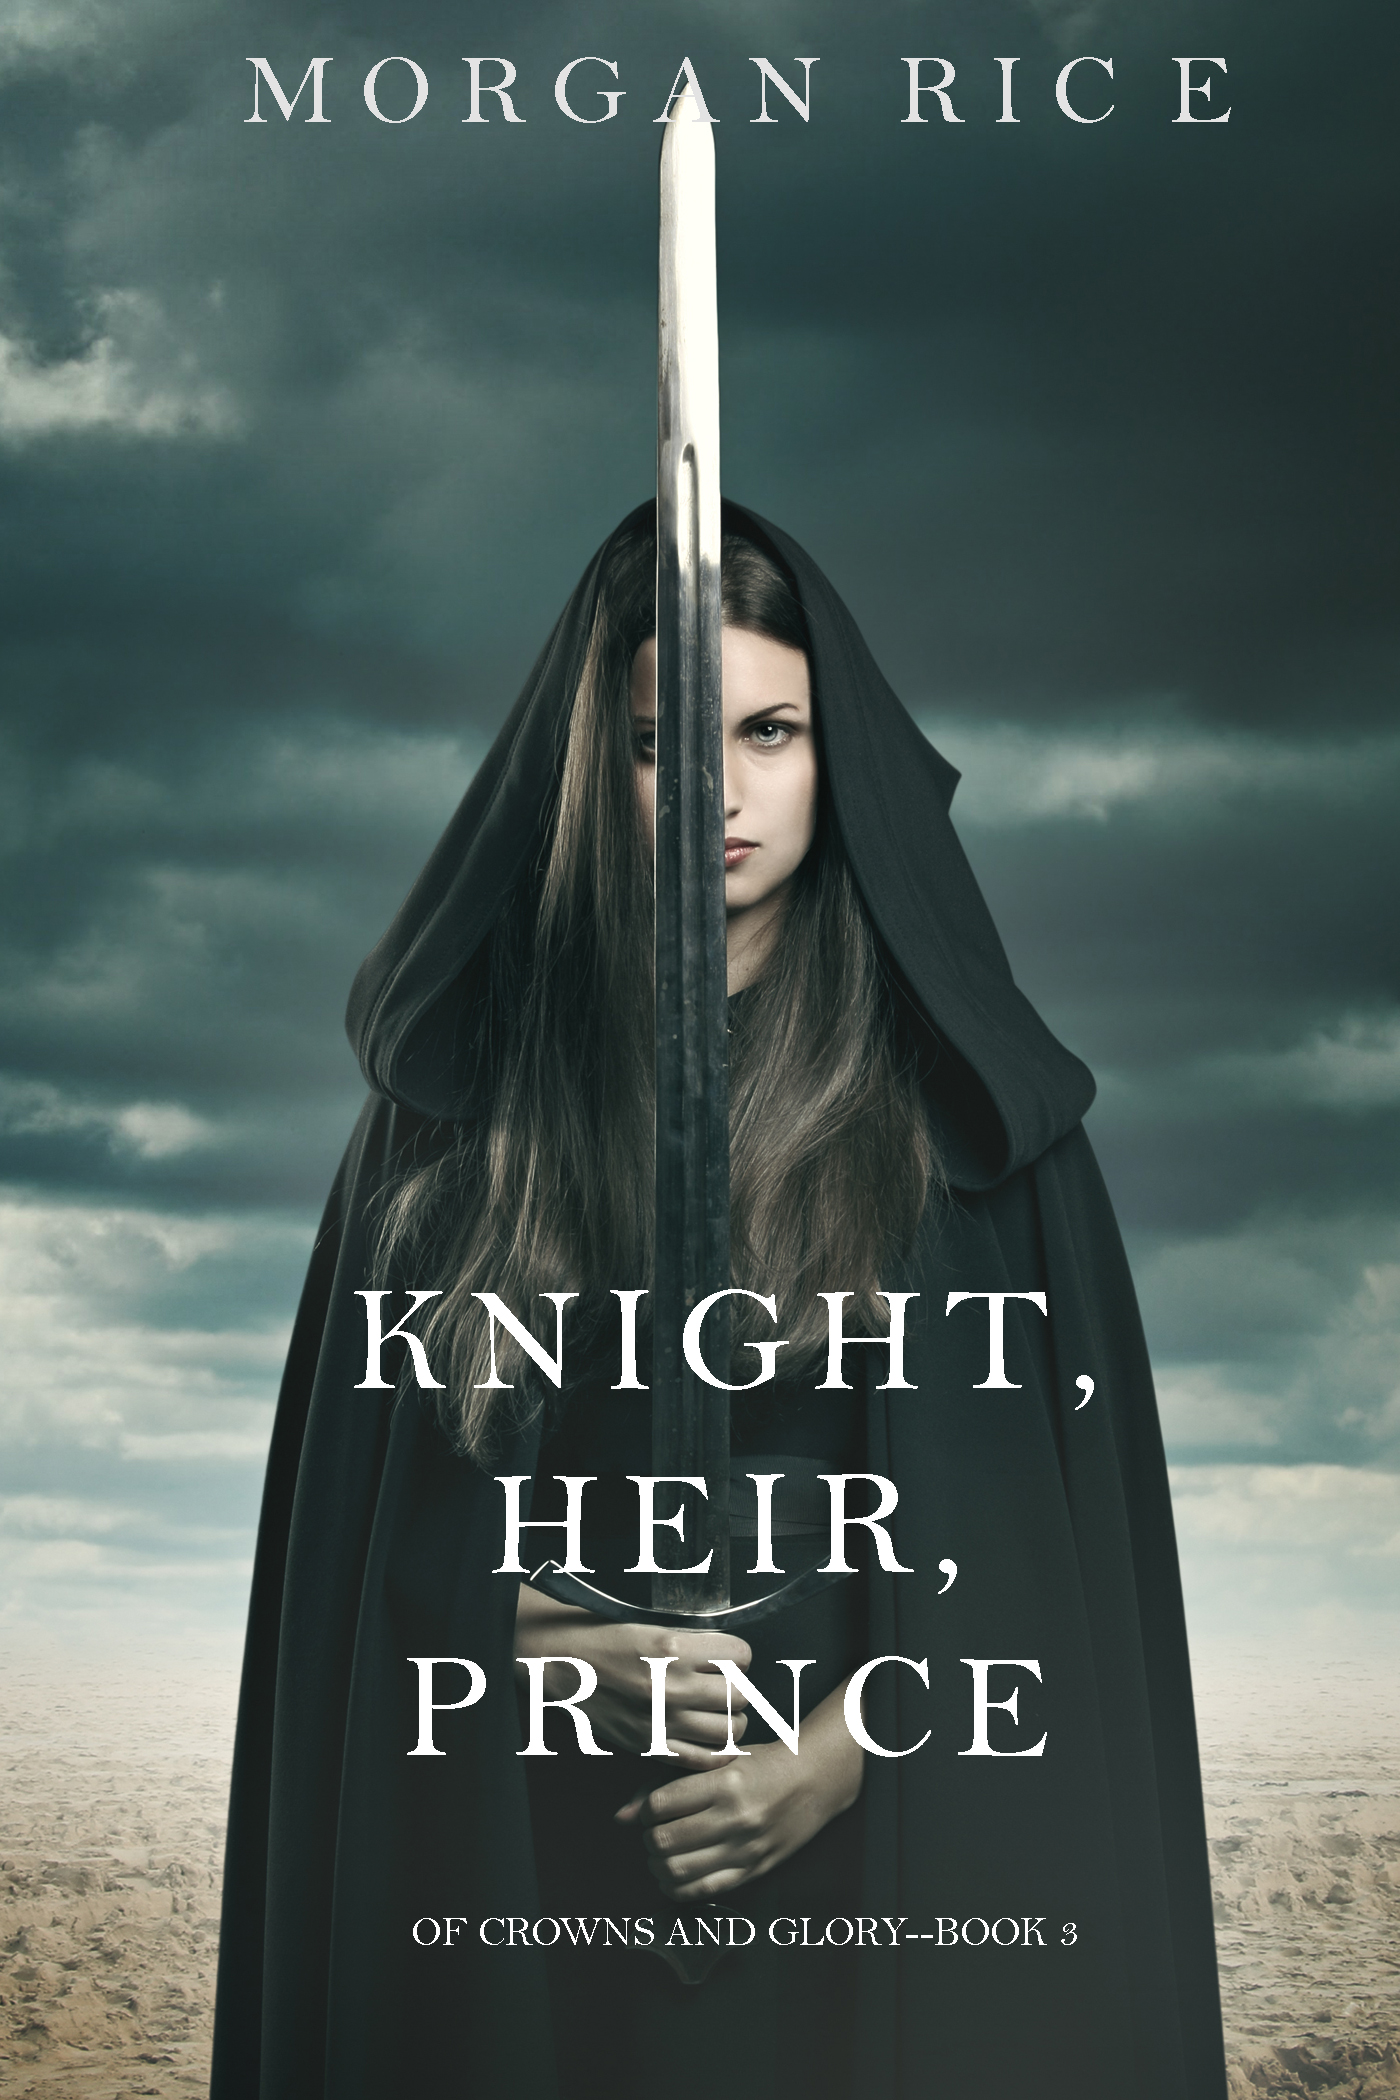 Книга Knight, Heir, Prince из серии , созданная Morgan Rice, может относится к жанру Зарубежное фэнтези, Боевое фэнтези, Современная зарубежная литература, Иностранные языки. Стоимость электронной книги Knight, Heir, Prince с идентификатором 23300155 составляет 299.00 руб.